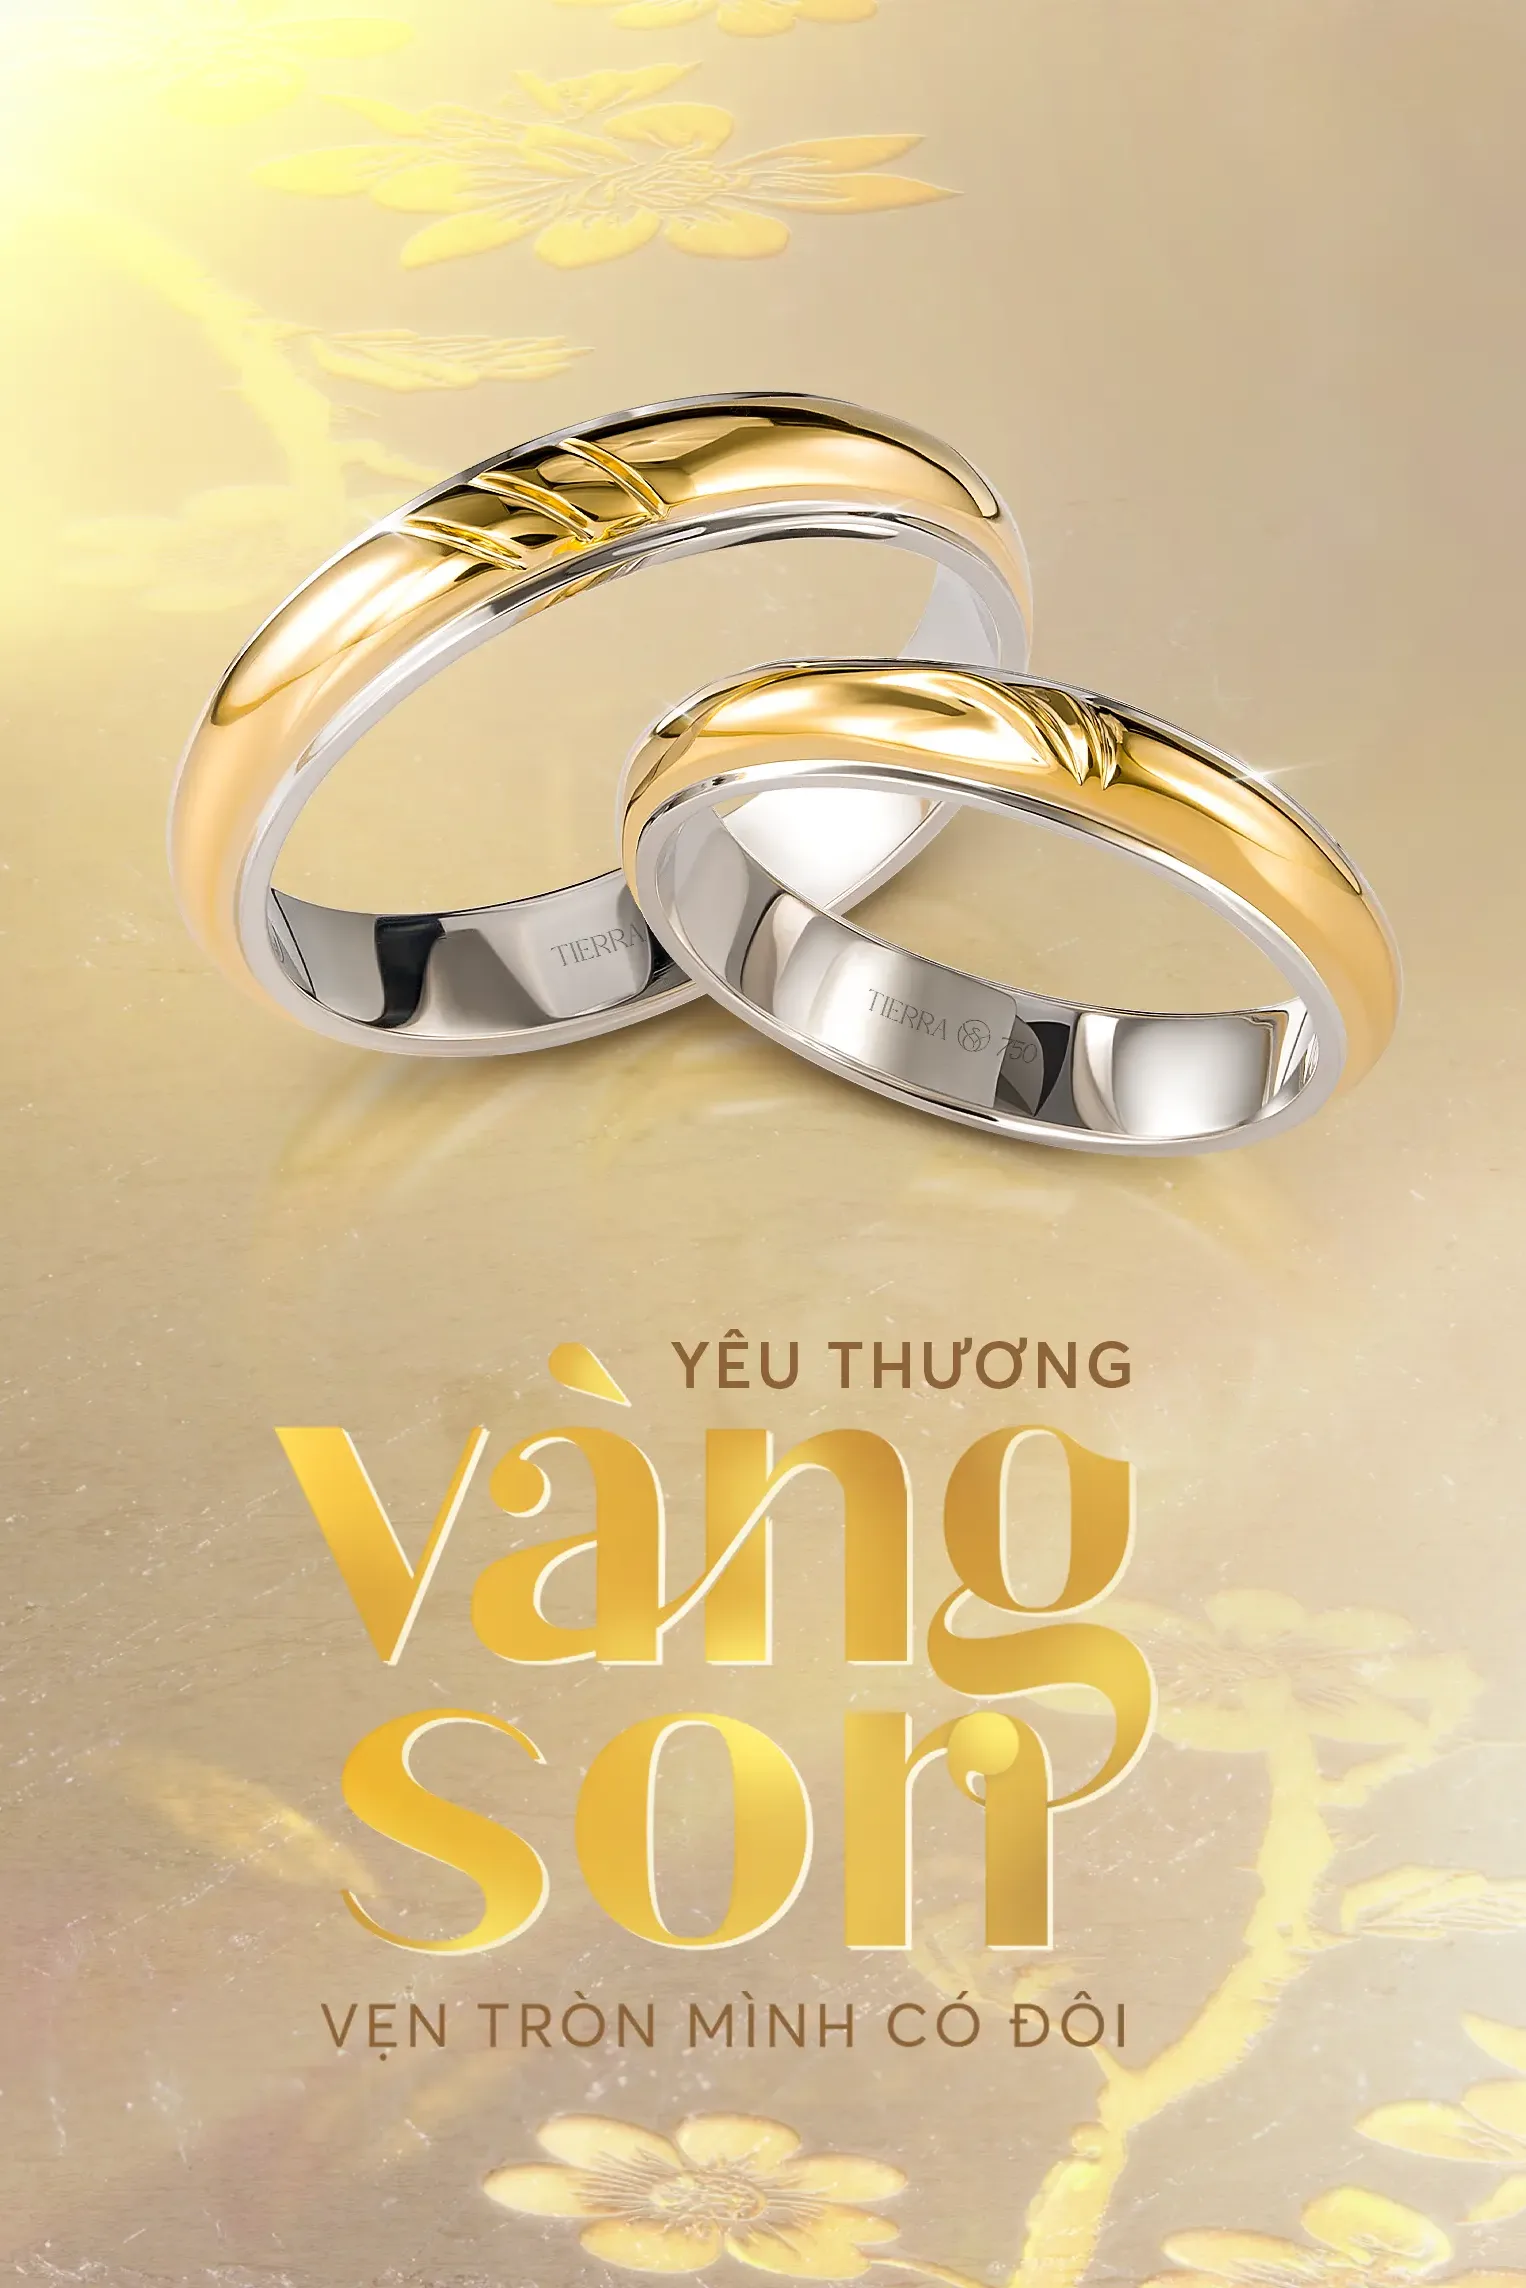 Bộ sưu tập nhẫn cưới “Yêu thương Vàng Son” - Vẻ đẹp hạnh phúc trao gửi ngày sánh đôi